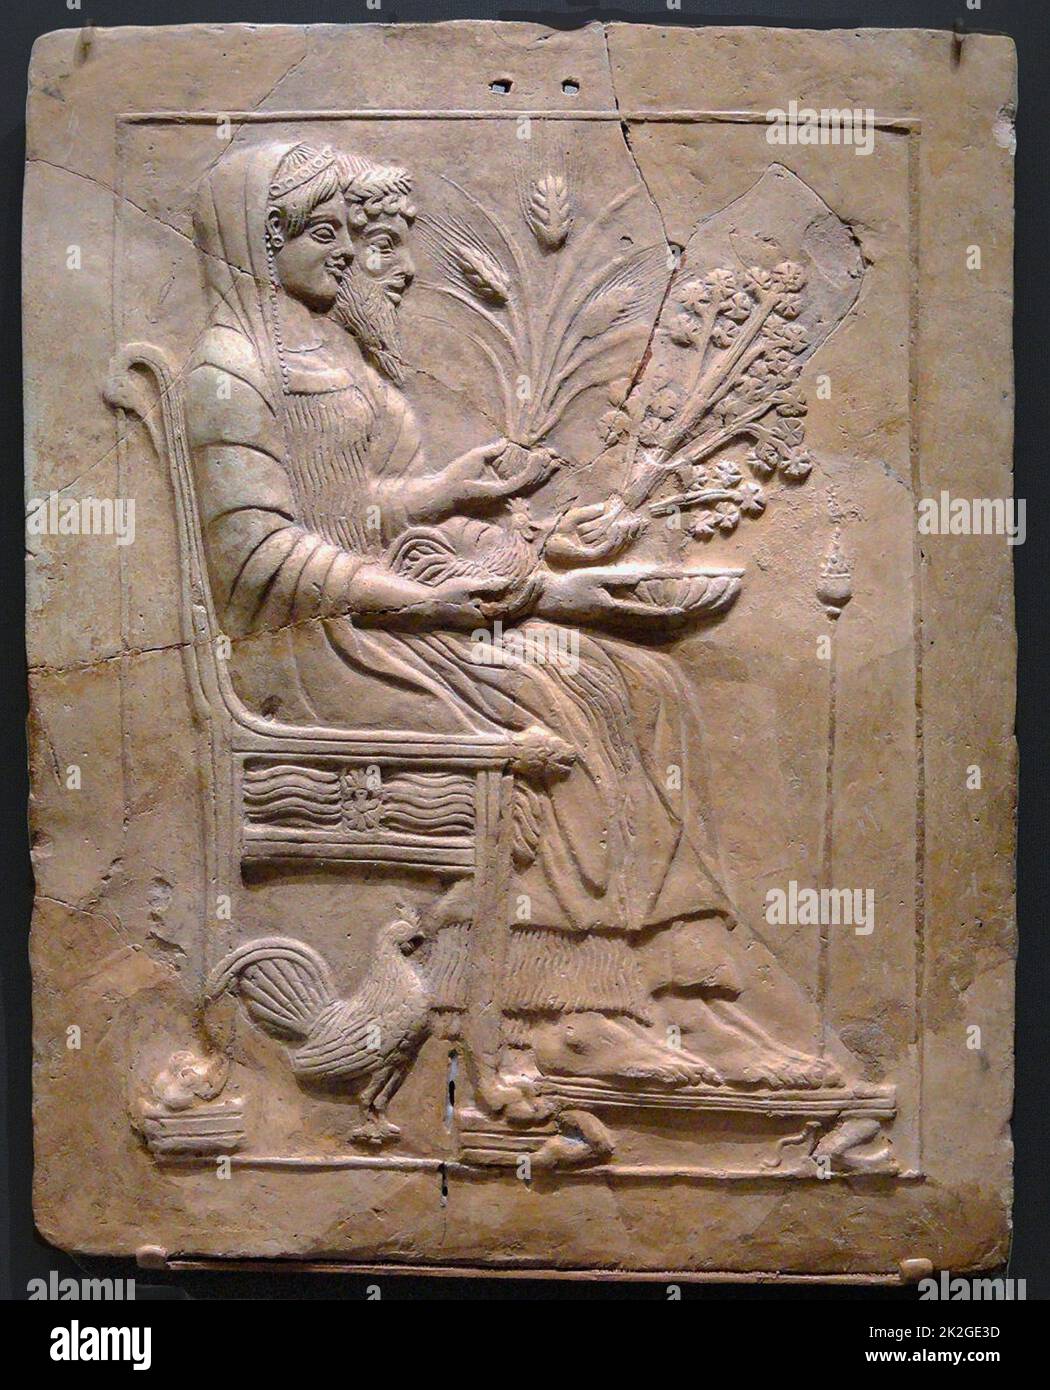 6978. Persefone la Regina degli Inferi e Ades il dio degli Inferi greci. Foto Stock